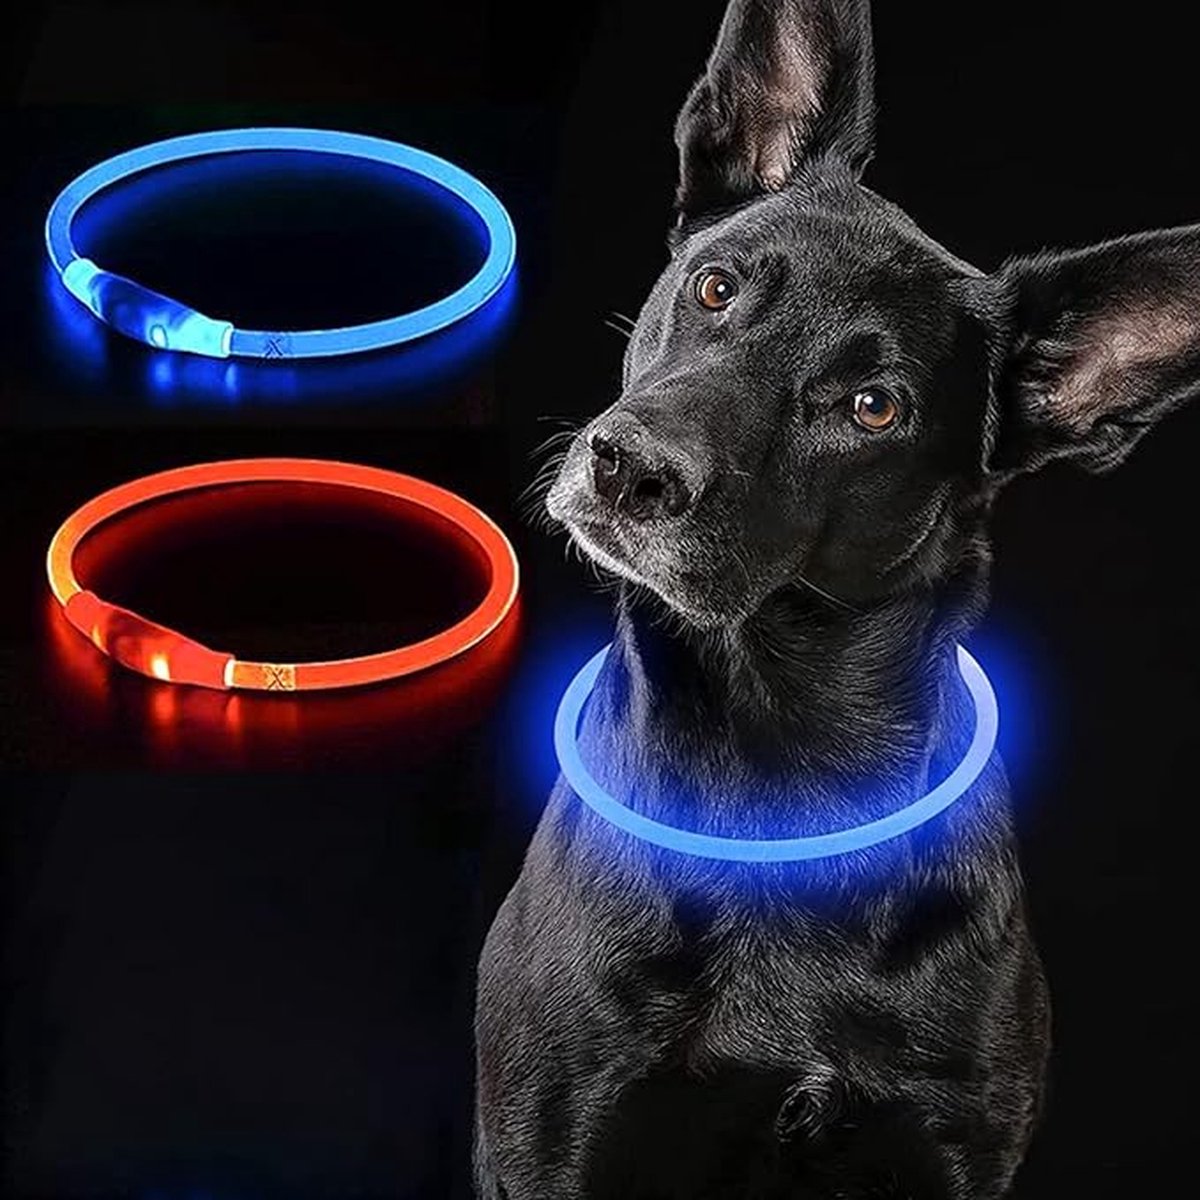 JN Blauwe LED Halsband voor honden - Medium size - blauw verlichte halsband - 50 cm - Graag nauwkeurig de maat opmeten! - Lichtgevende Halsband Hond - Oplaadbaar via USB - adjustable - verstelbaar - verstelbare halsband USB oplaadbaar - JN